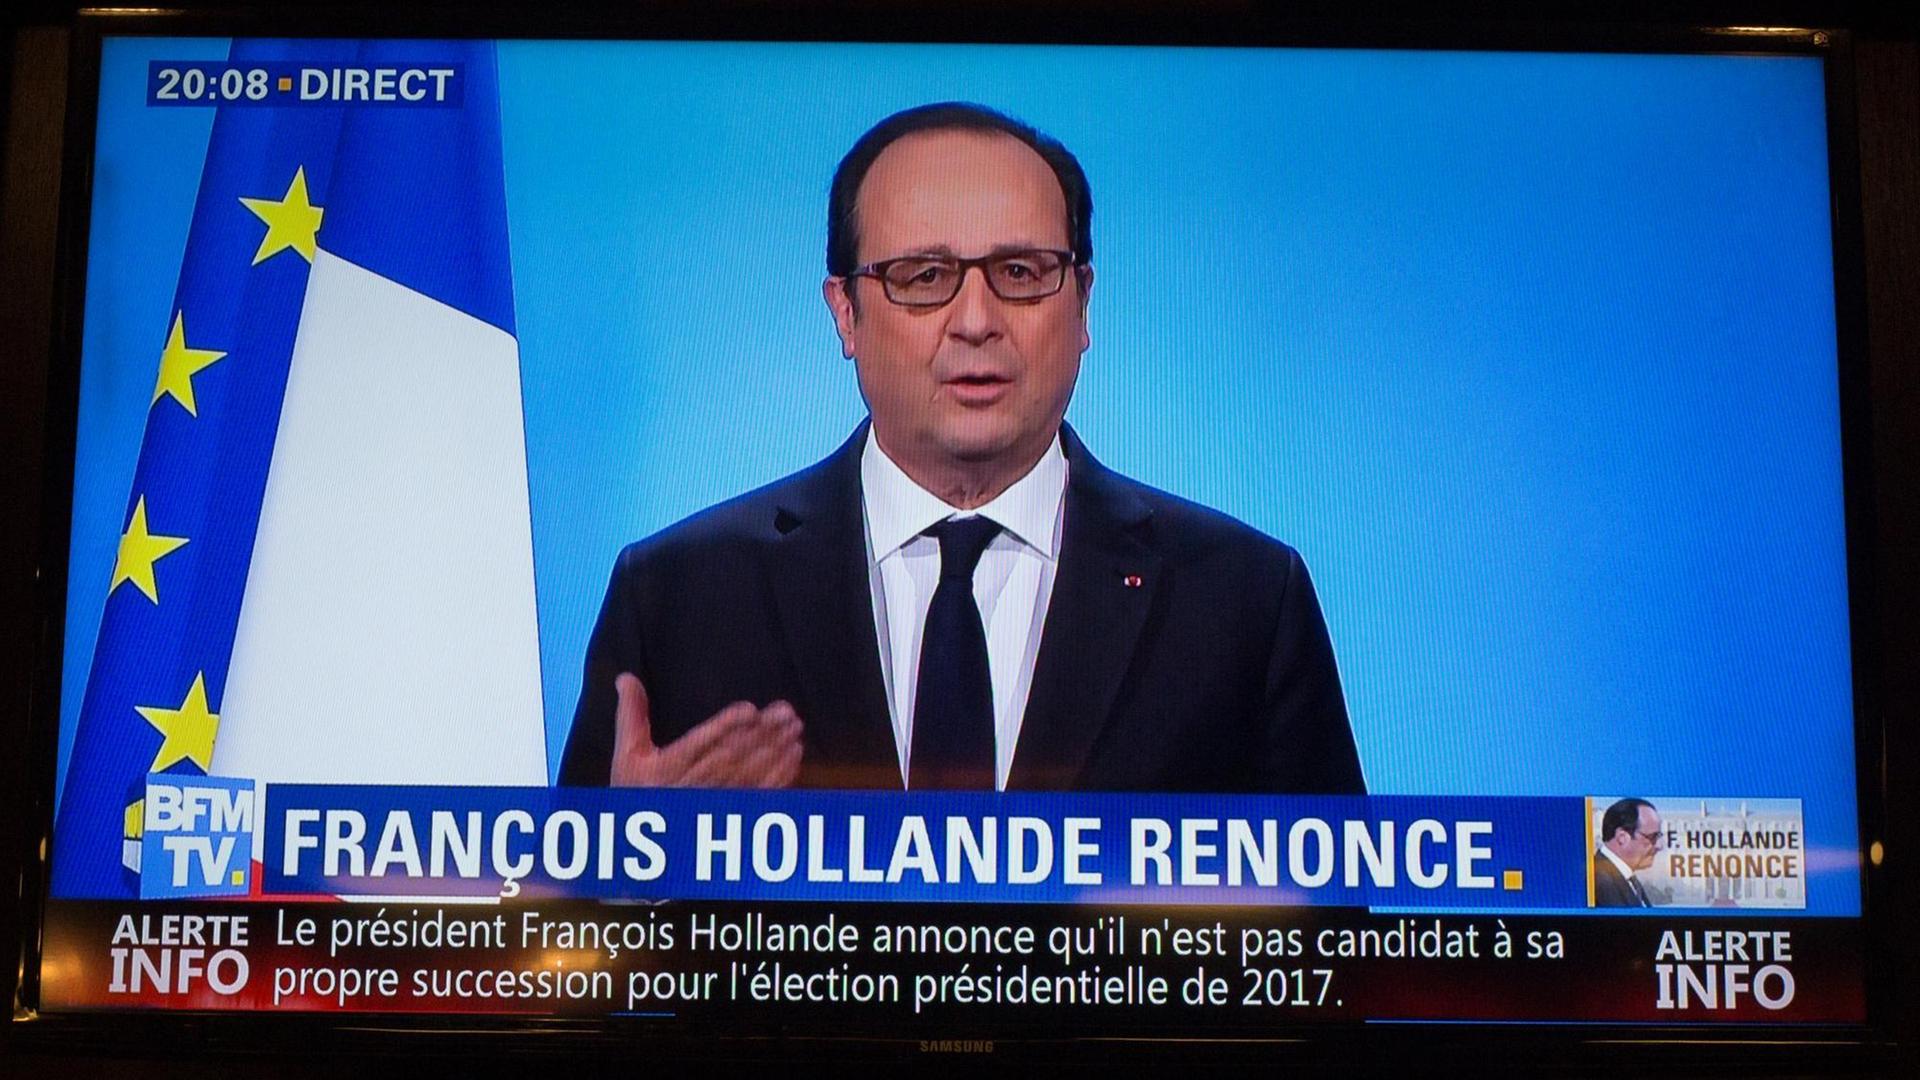 Frankreichs Präsident François Hollande gab in einer Fersehansprache bekannt, dass er nicht für eine zweite Amtszeit antritt.